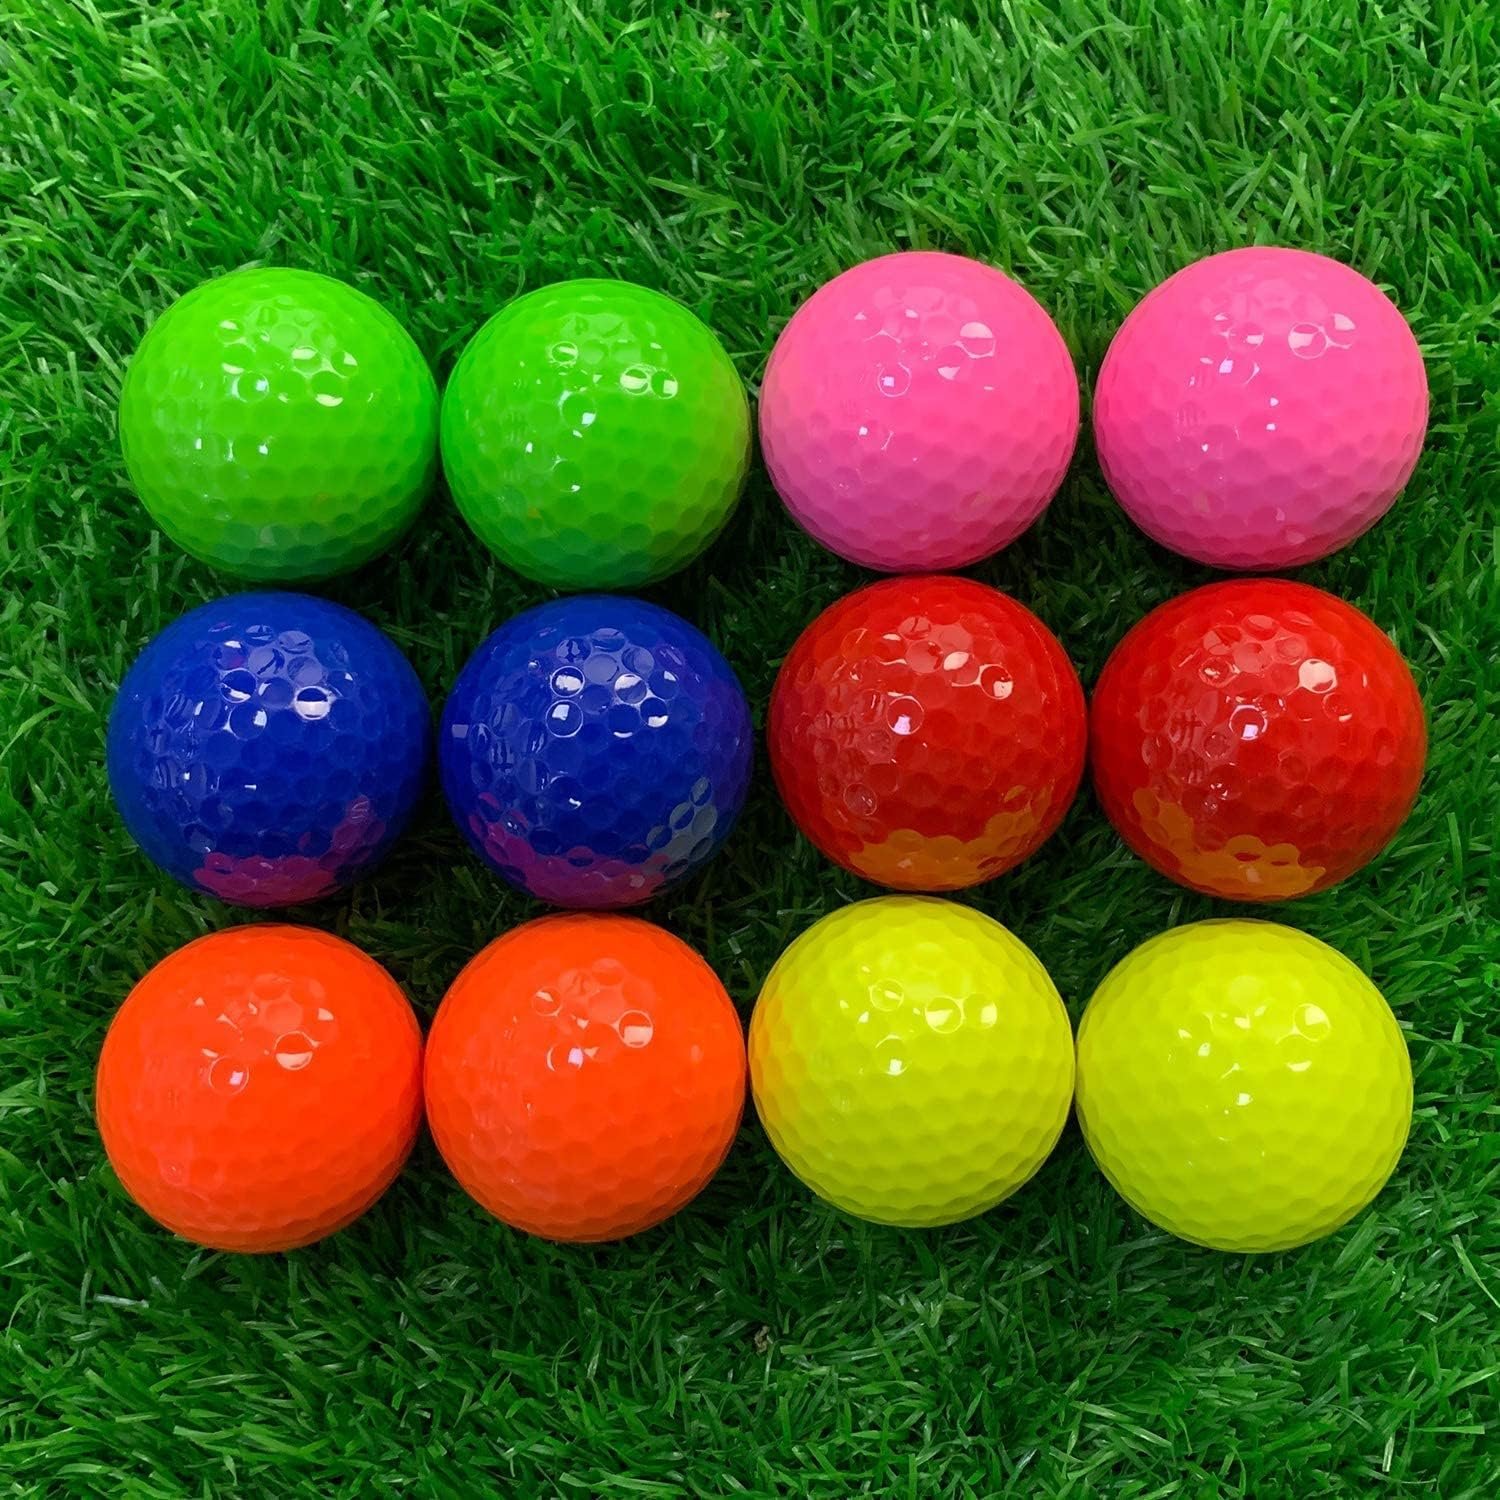 KOFULL Golf Balls - 1 Dozen Colored Miniature Golf Balls, Mini Golf Balls for Beginner Backyard Indoor Outdoor Trainning, Golf Gifts for Golfer